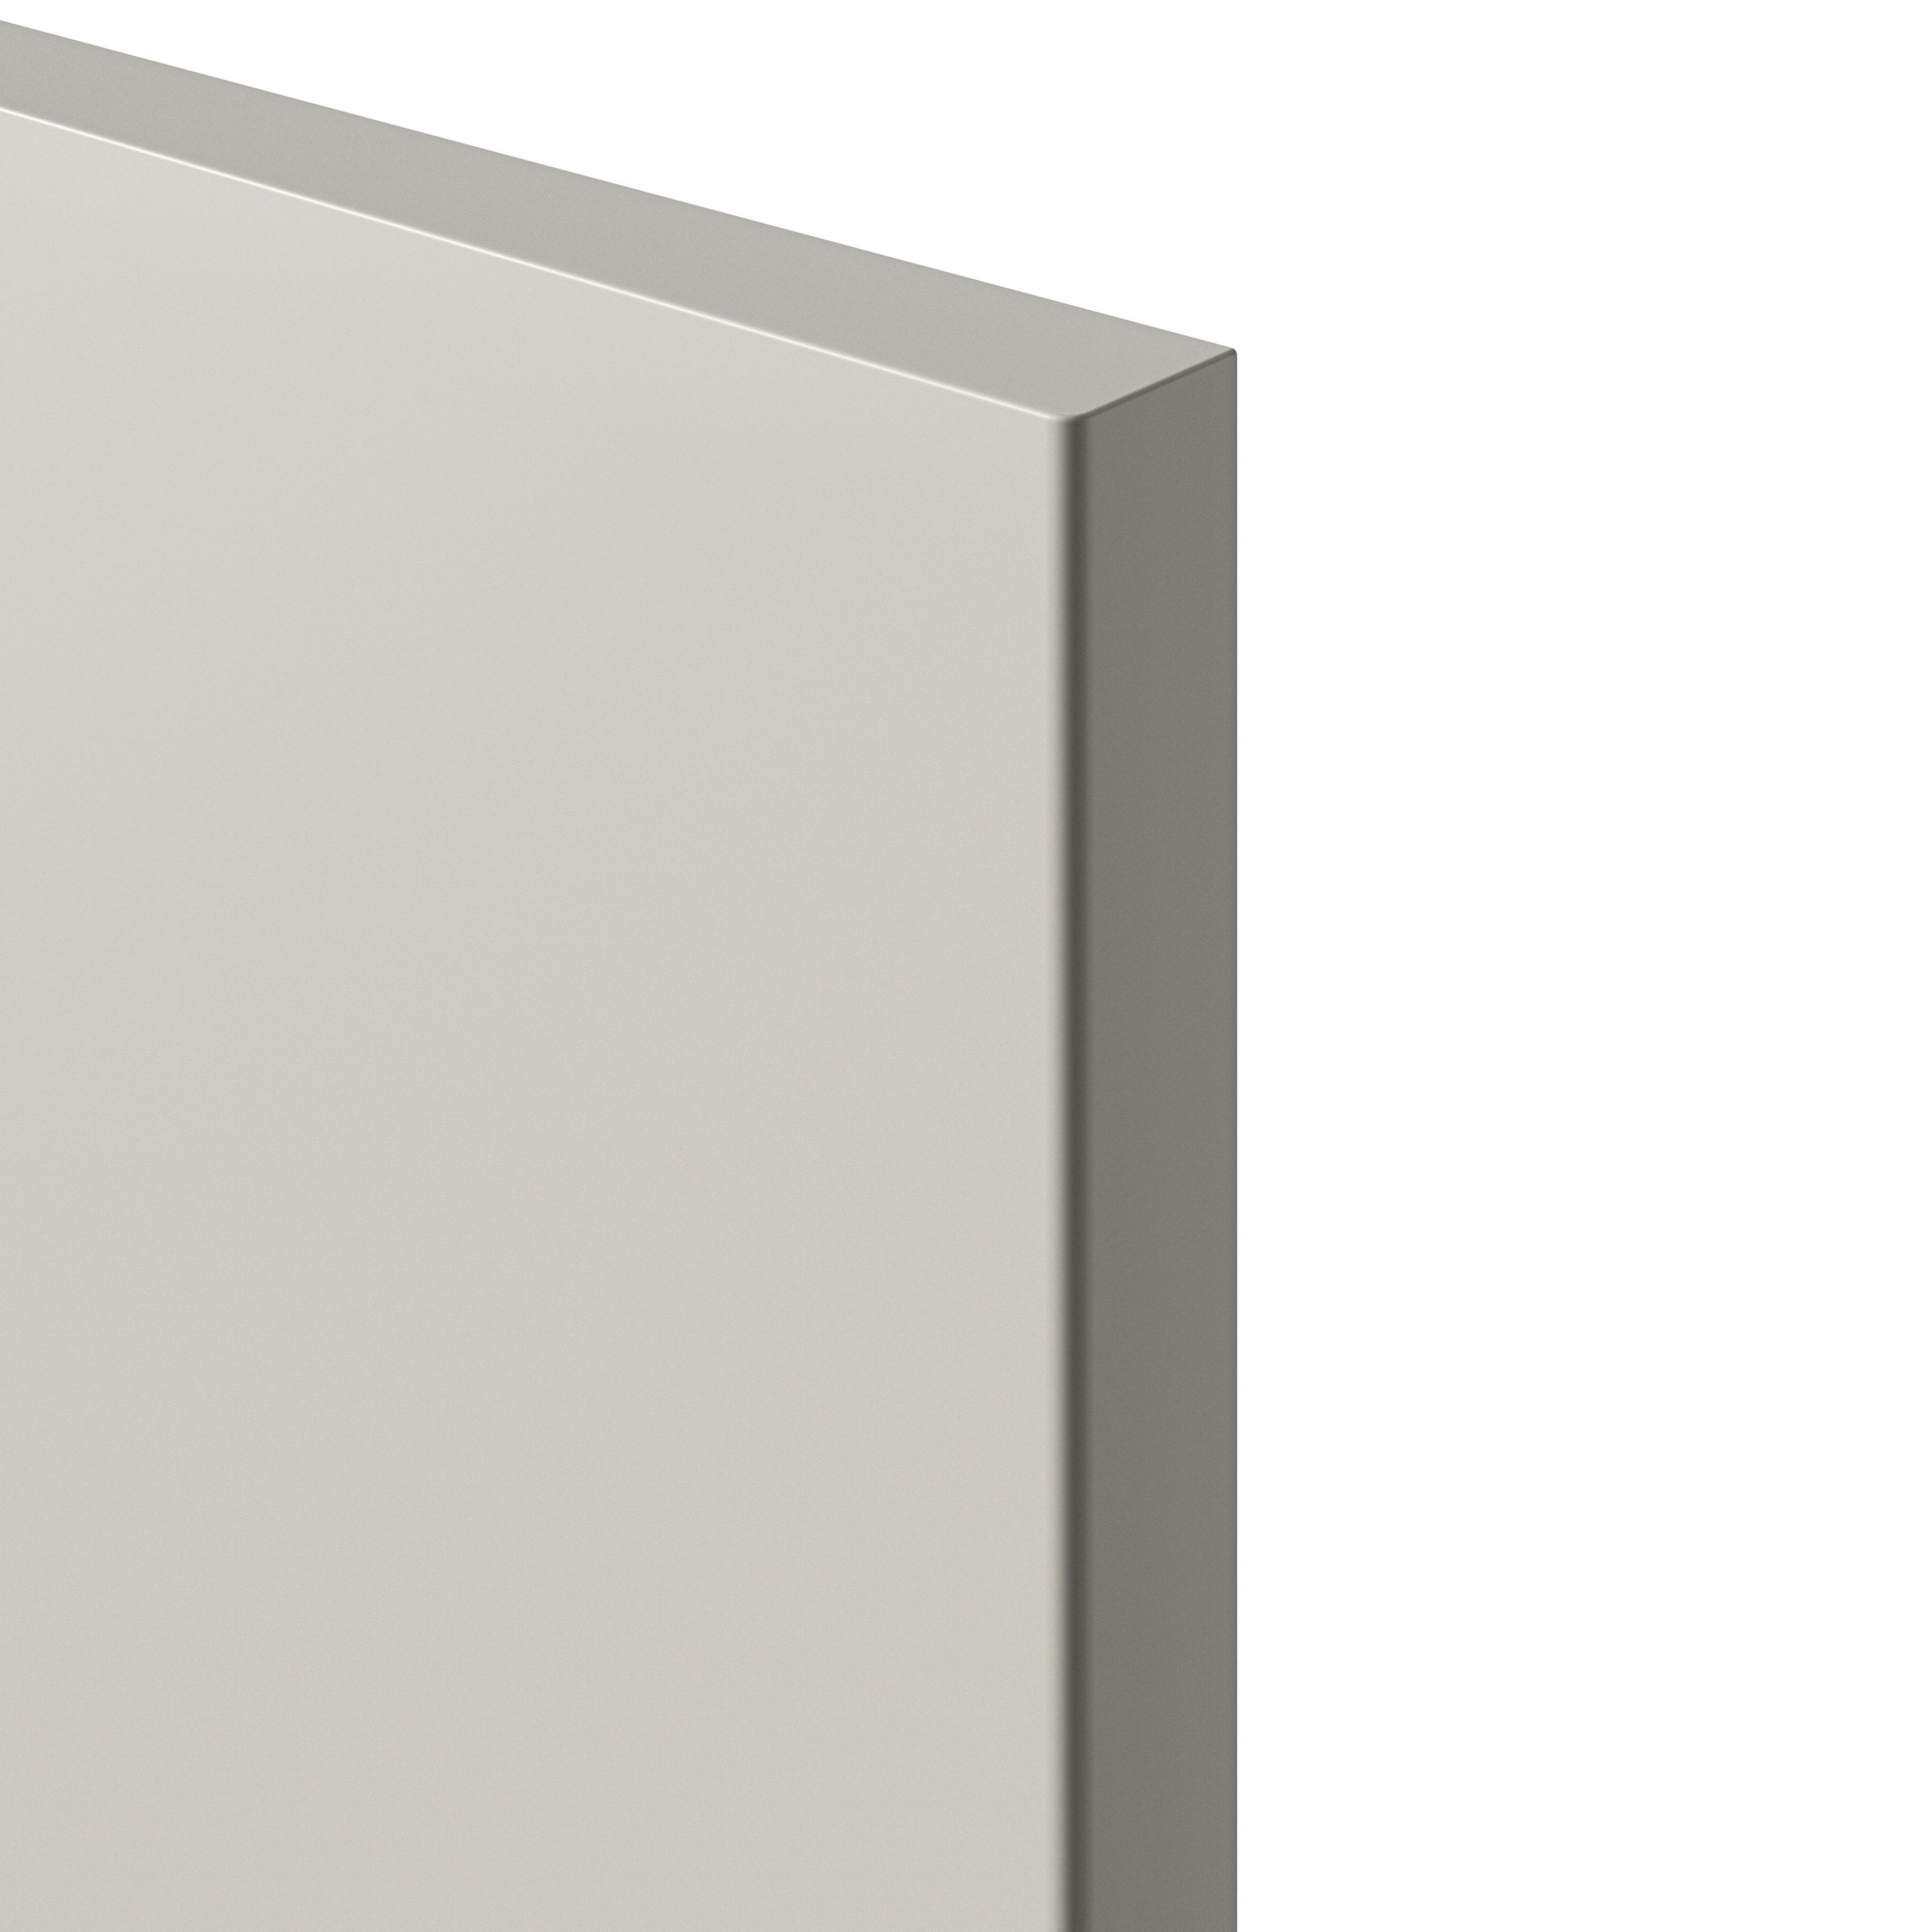 GoodHome Stevia Matt sandstone slab 50:50 Tall larder Cabinet door (W)600mm (H)1181mm (T)18mm